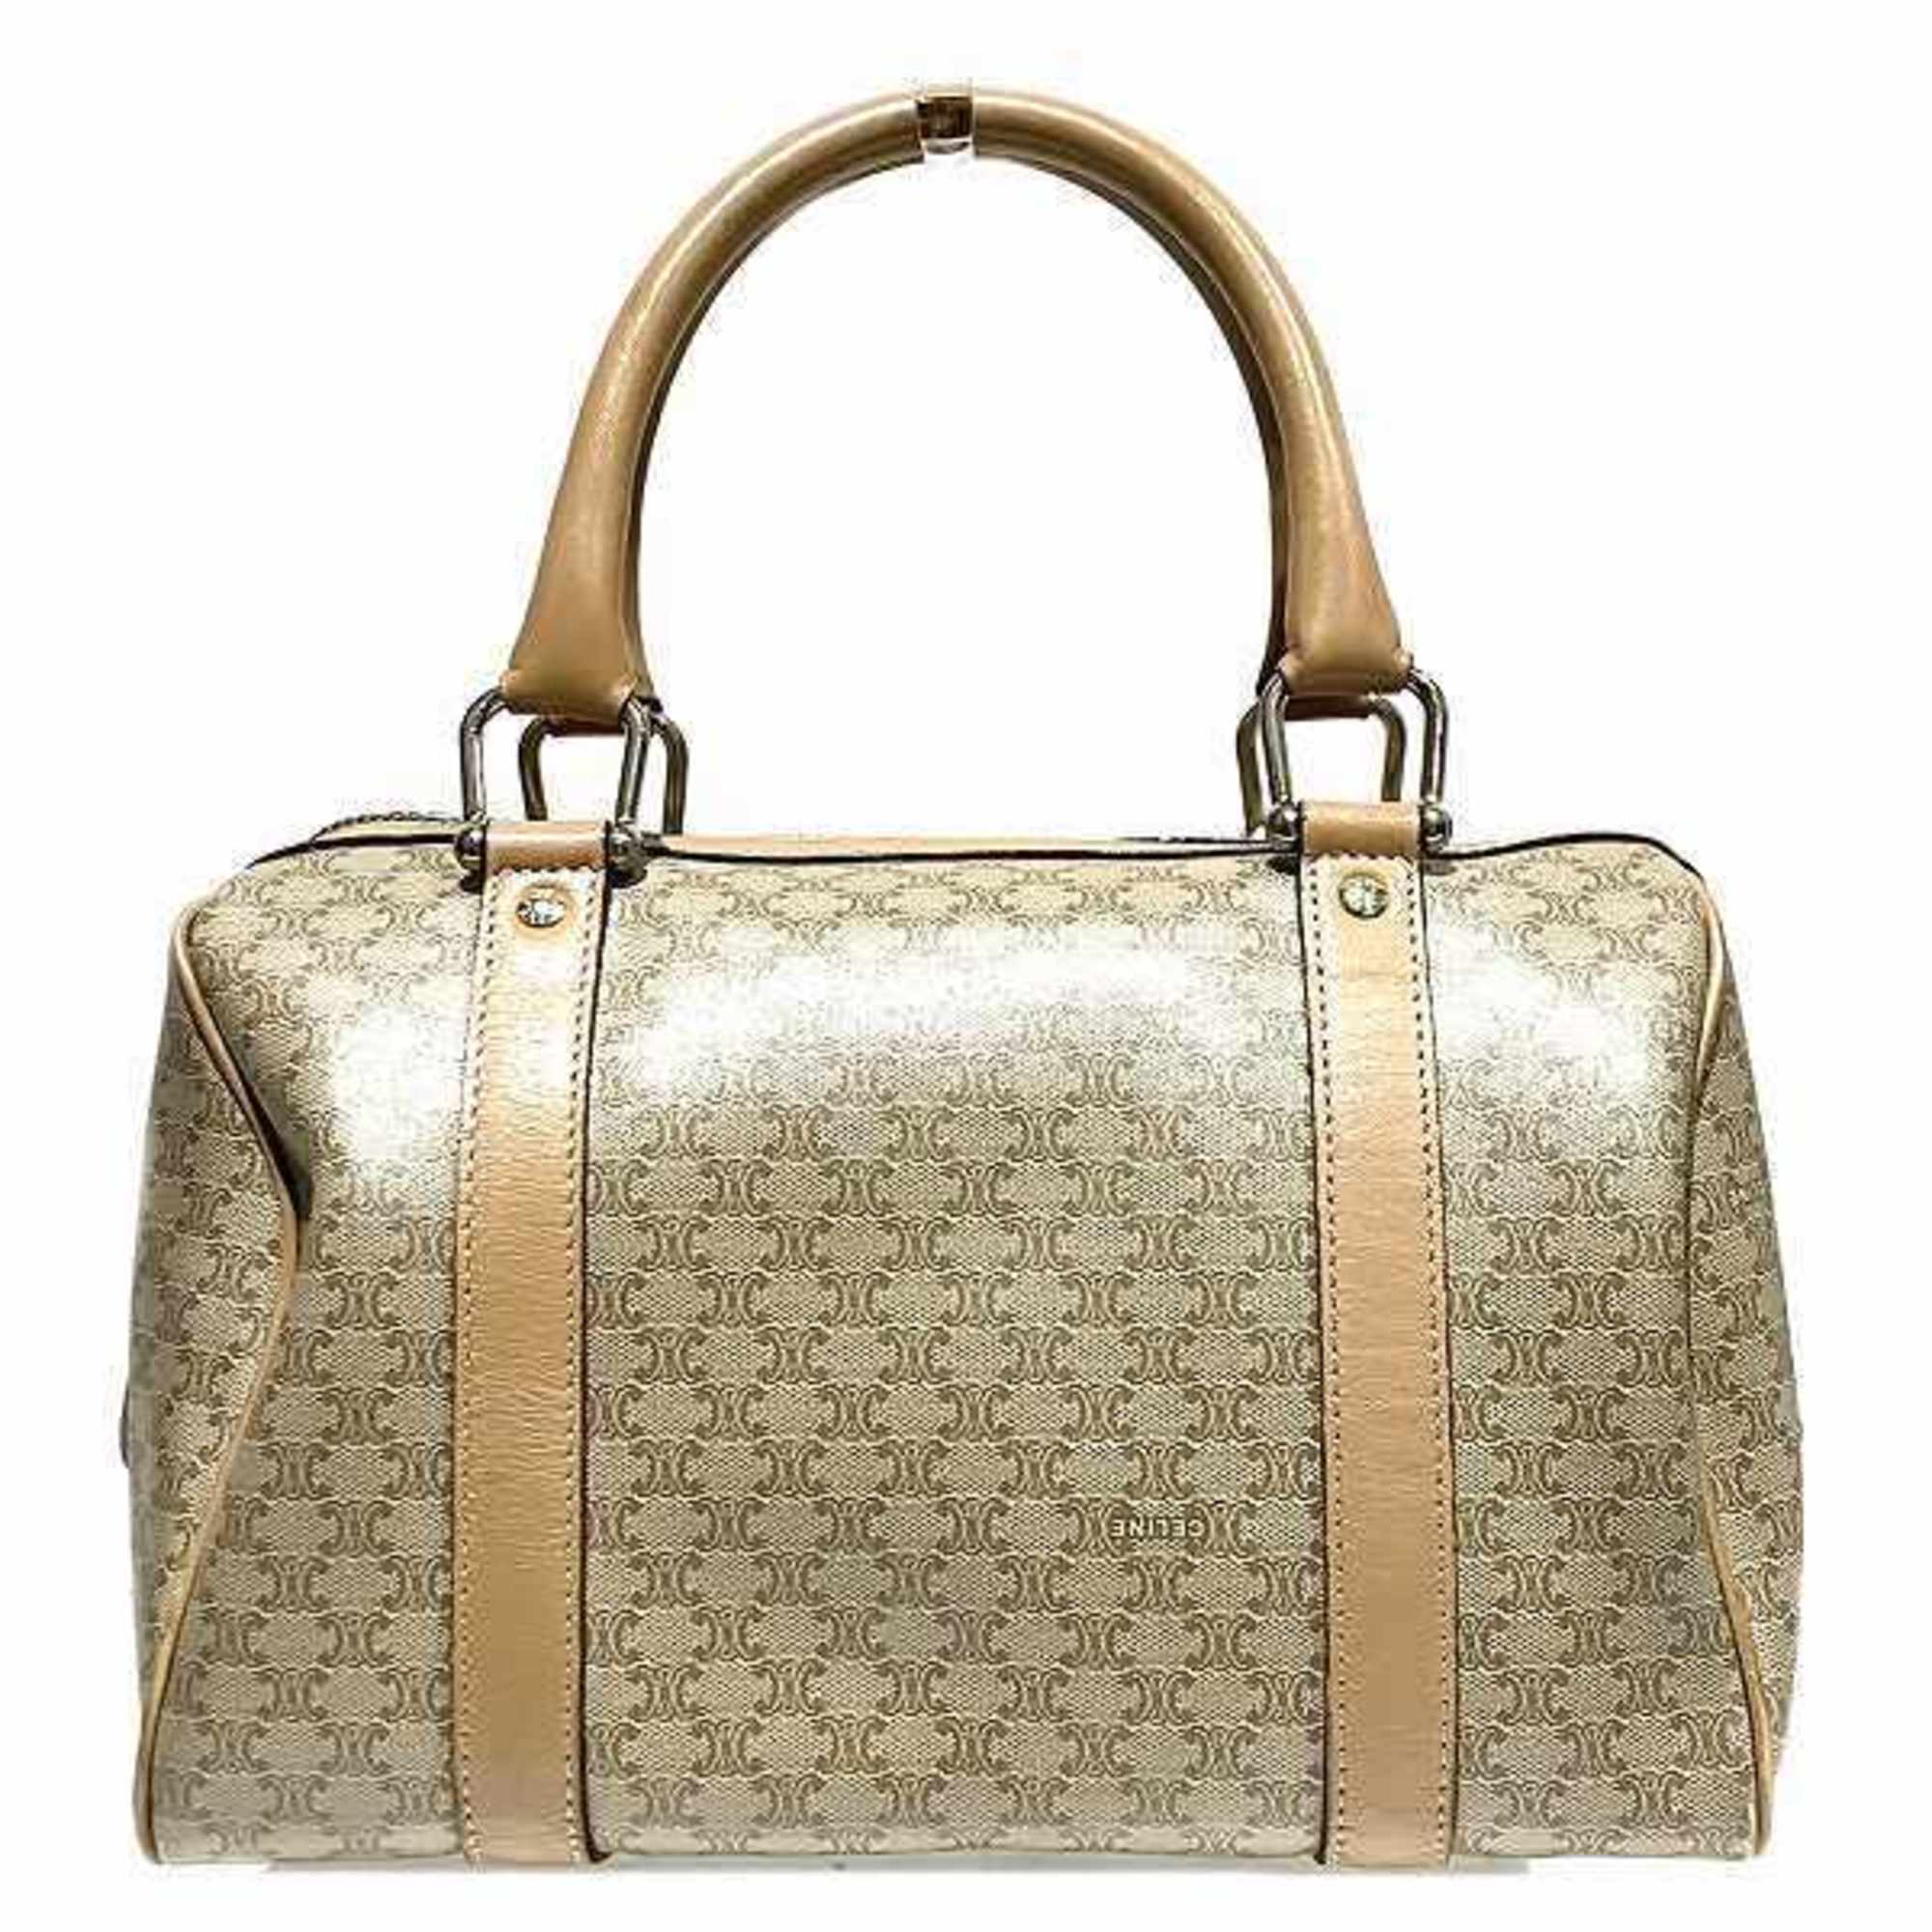 Celine Macadam M13 Bag Boston Handbag Ladies